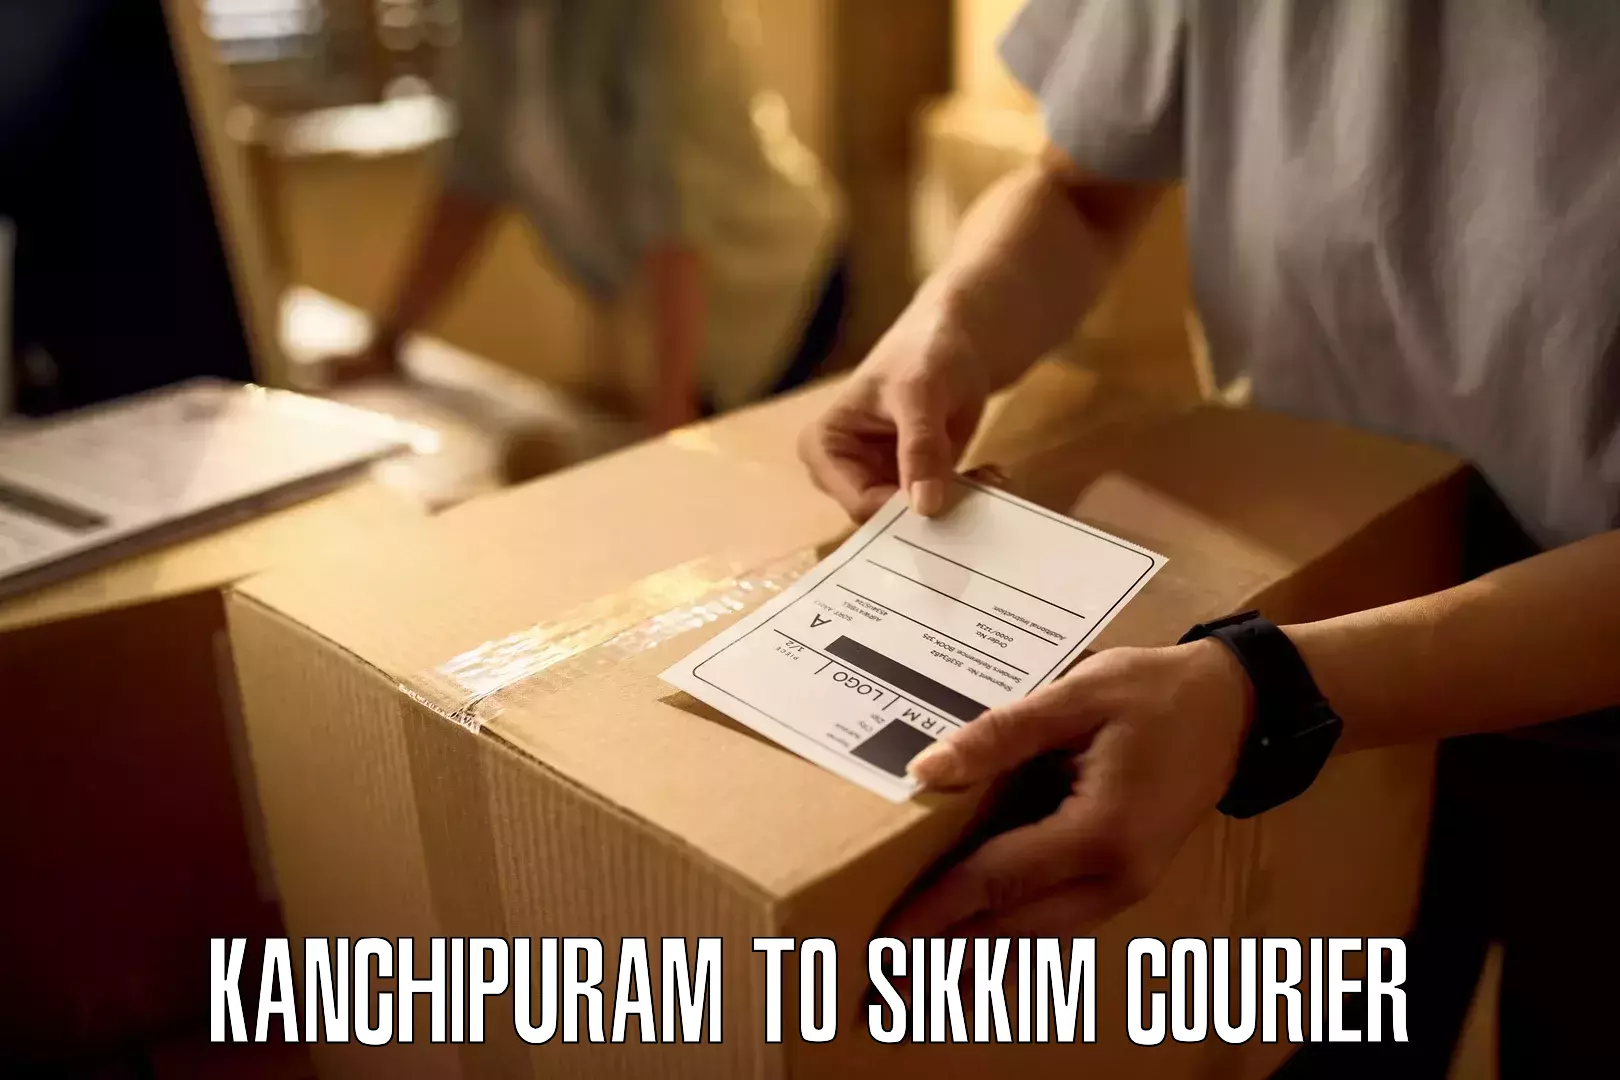 Courier app Kanchipuram to Jorethang